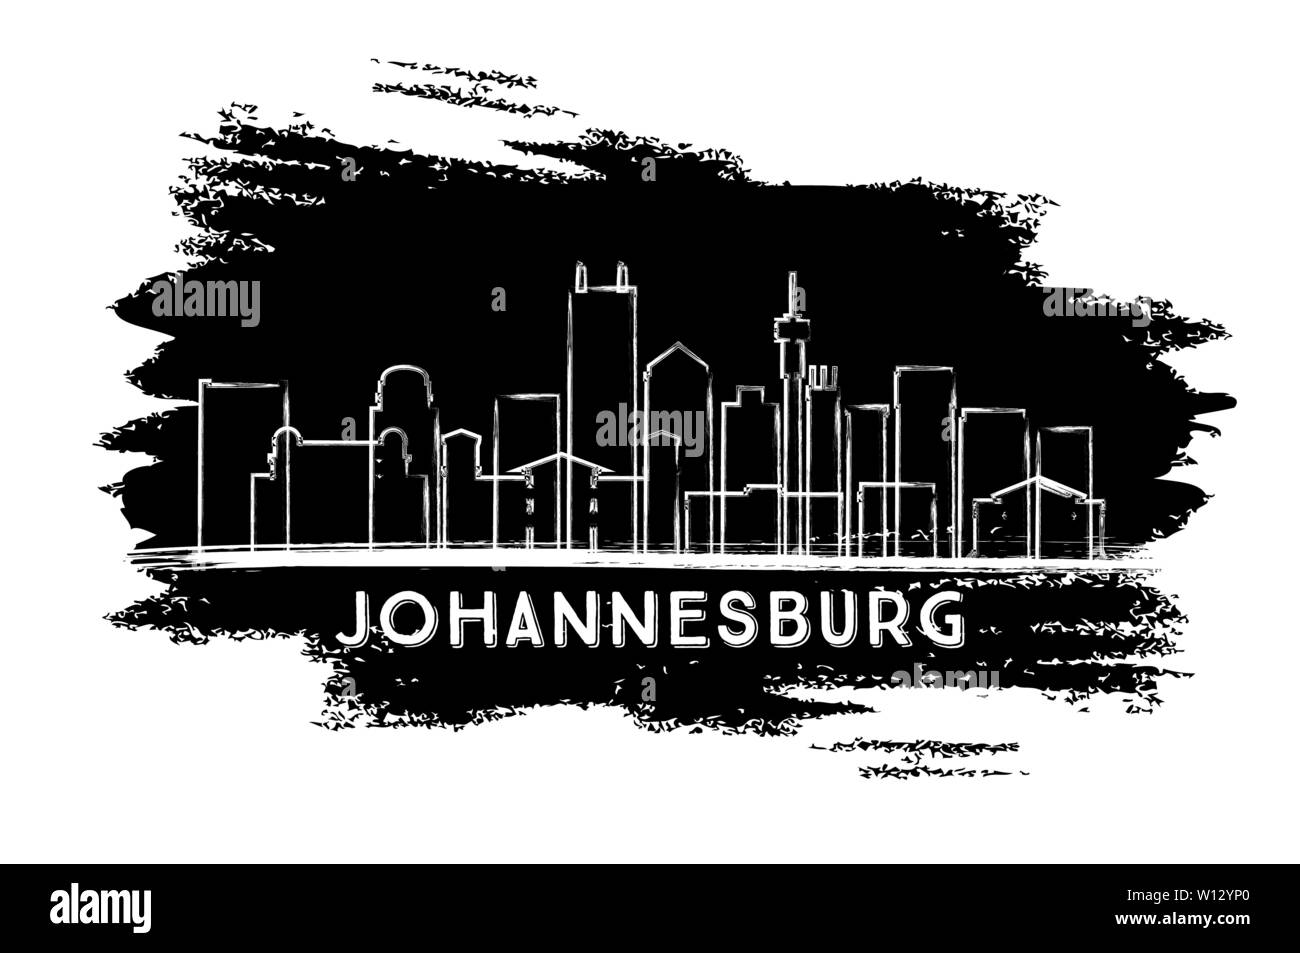 Johannesburg Südafrika Skyline der Stadt Silhouette. Hand gezeichnete Skizze. Vector Illustration. Business Travel und Tourismus Konzept. Stock Vektor